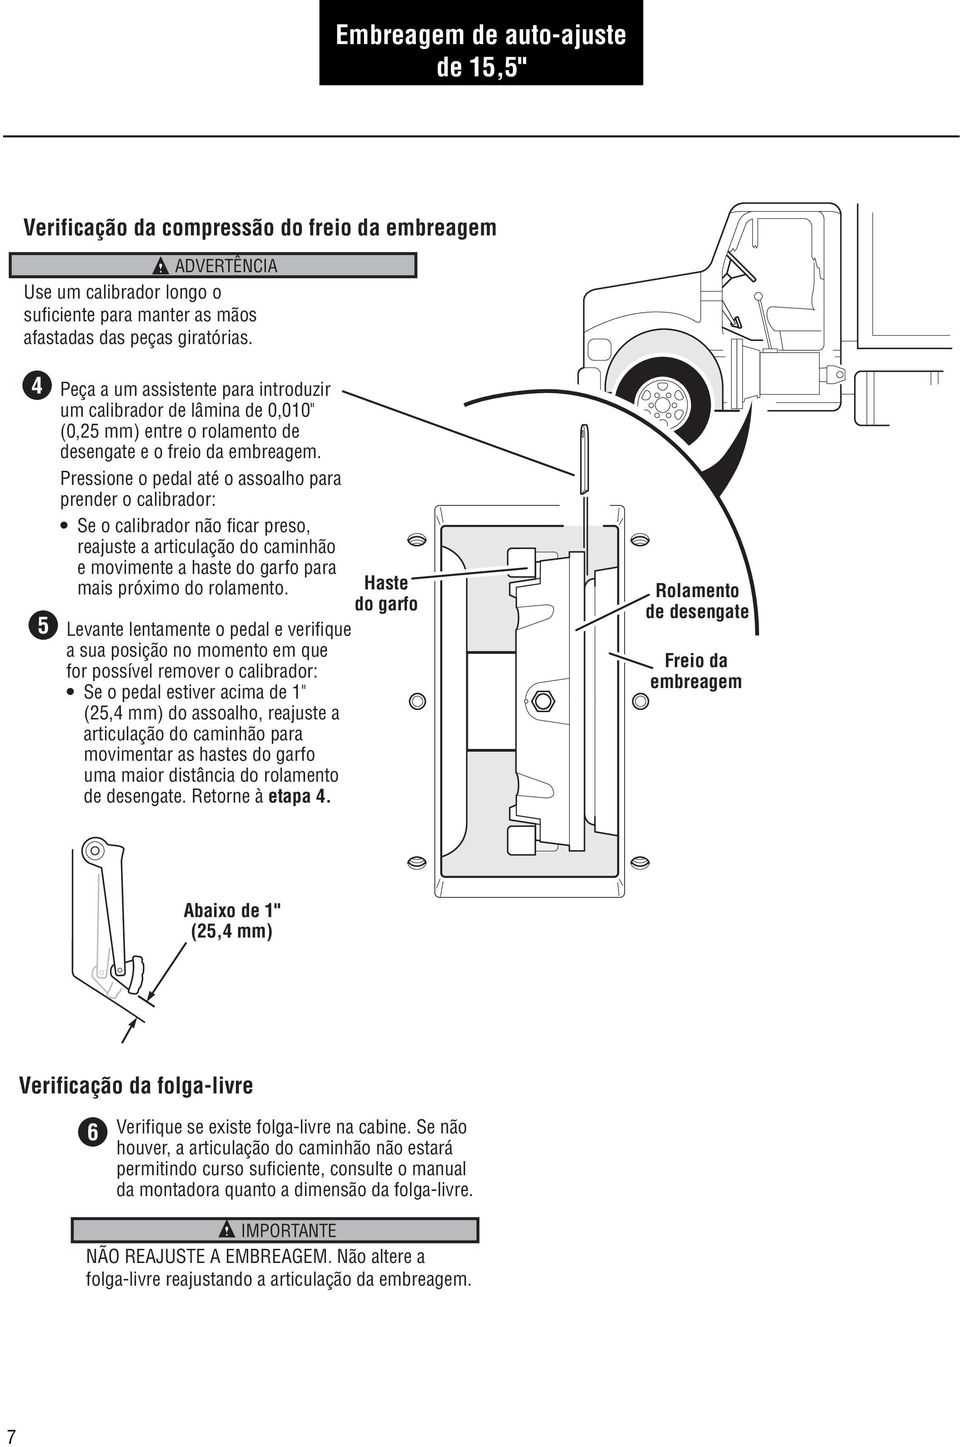 Pressione o pedal até o assoalho para prender o calibrador: Se o calibrador não ficar preso, reajuste a articulação do caminhão e movimente a haste do garfo para mais próximo do rolamento.